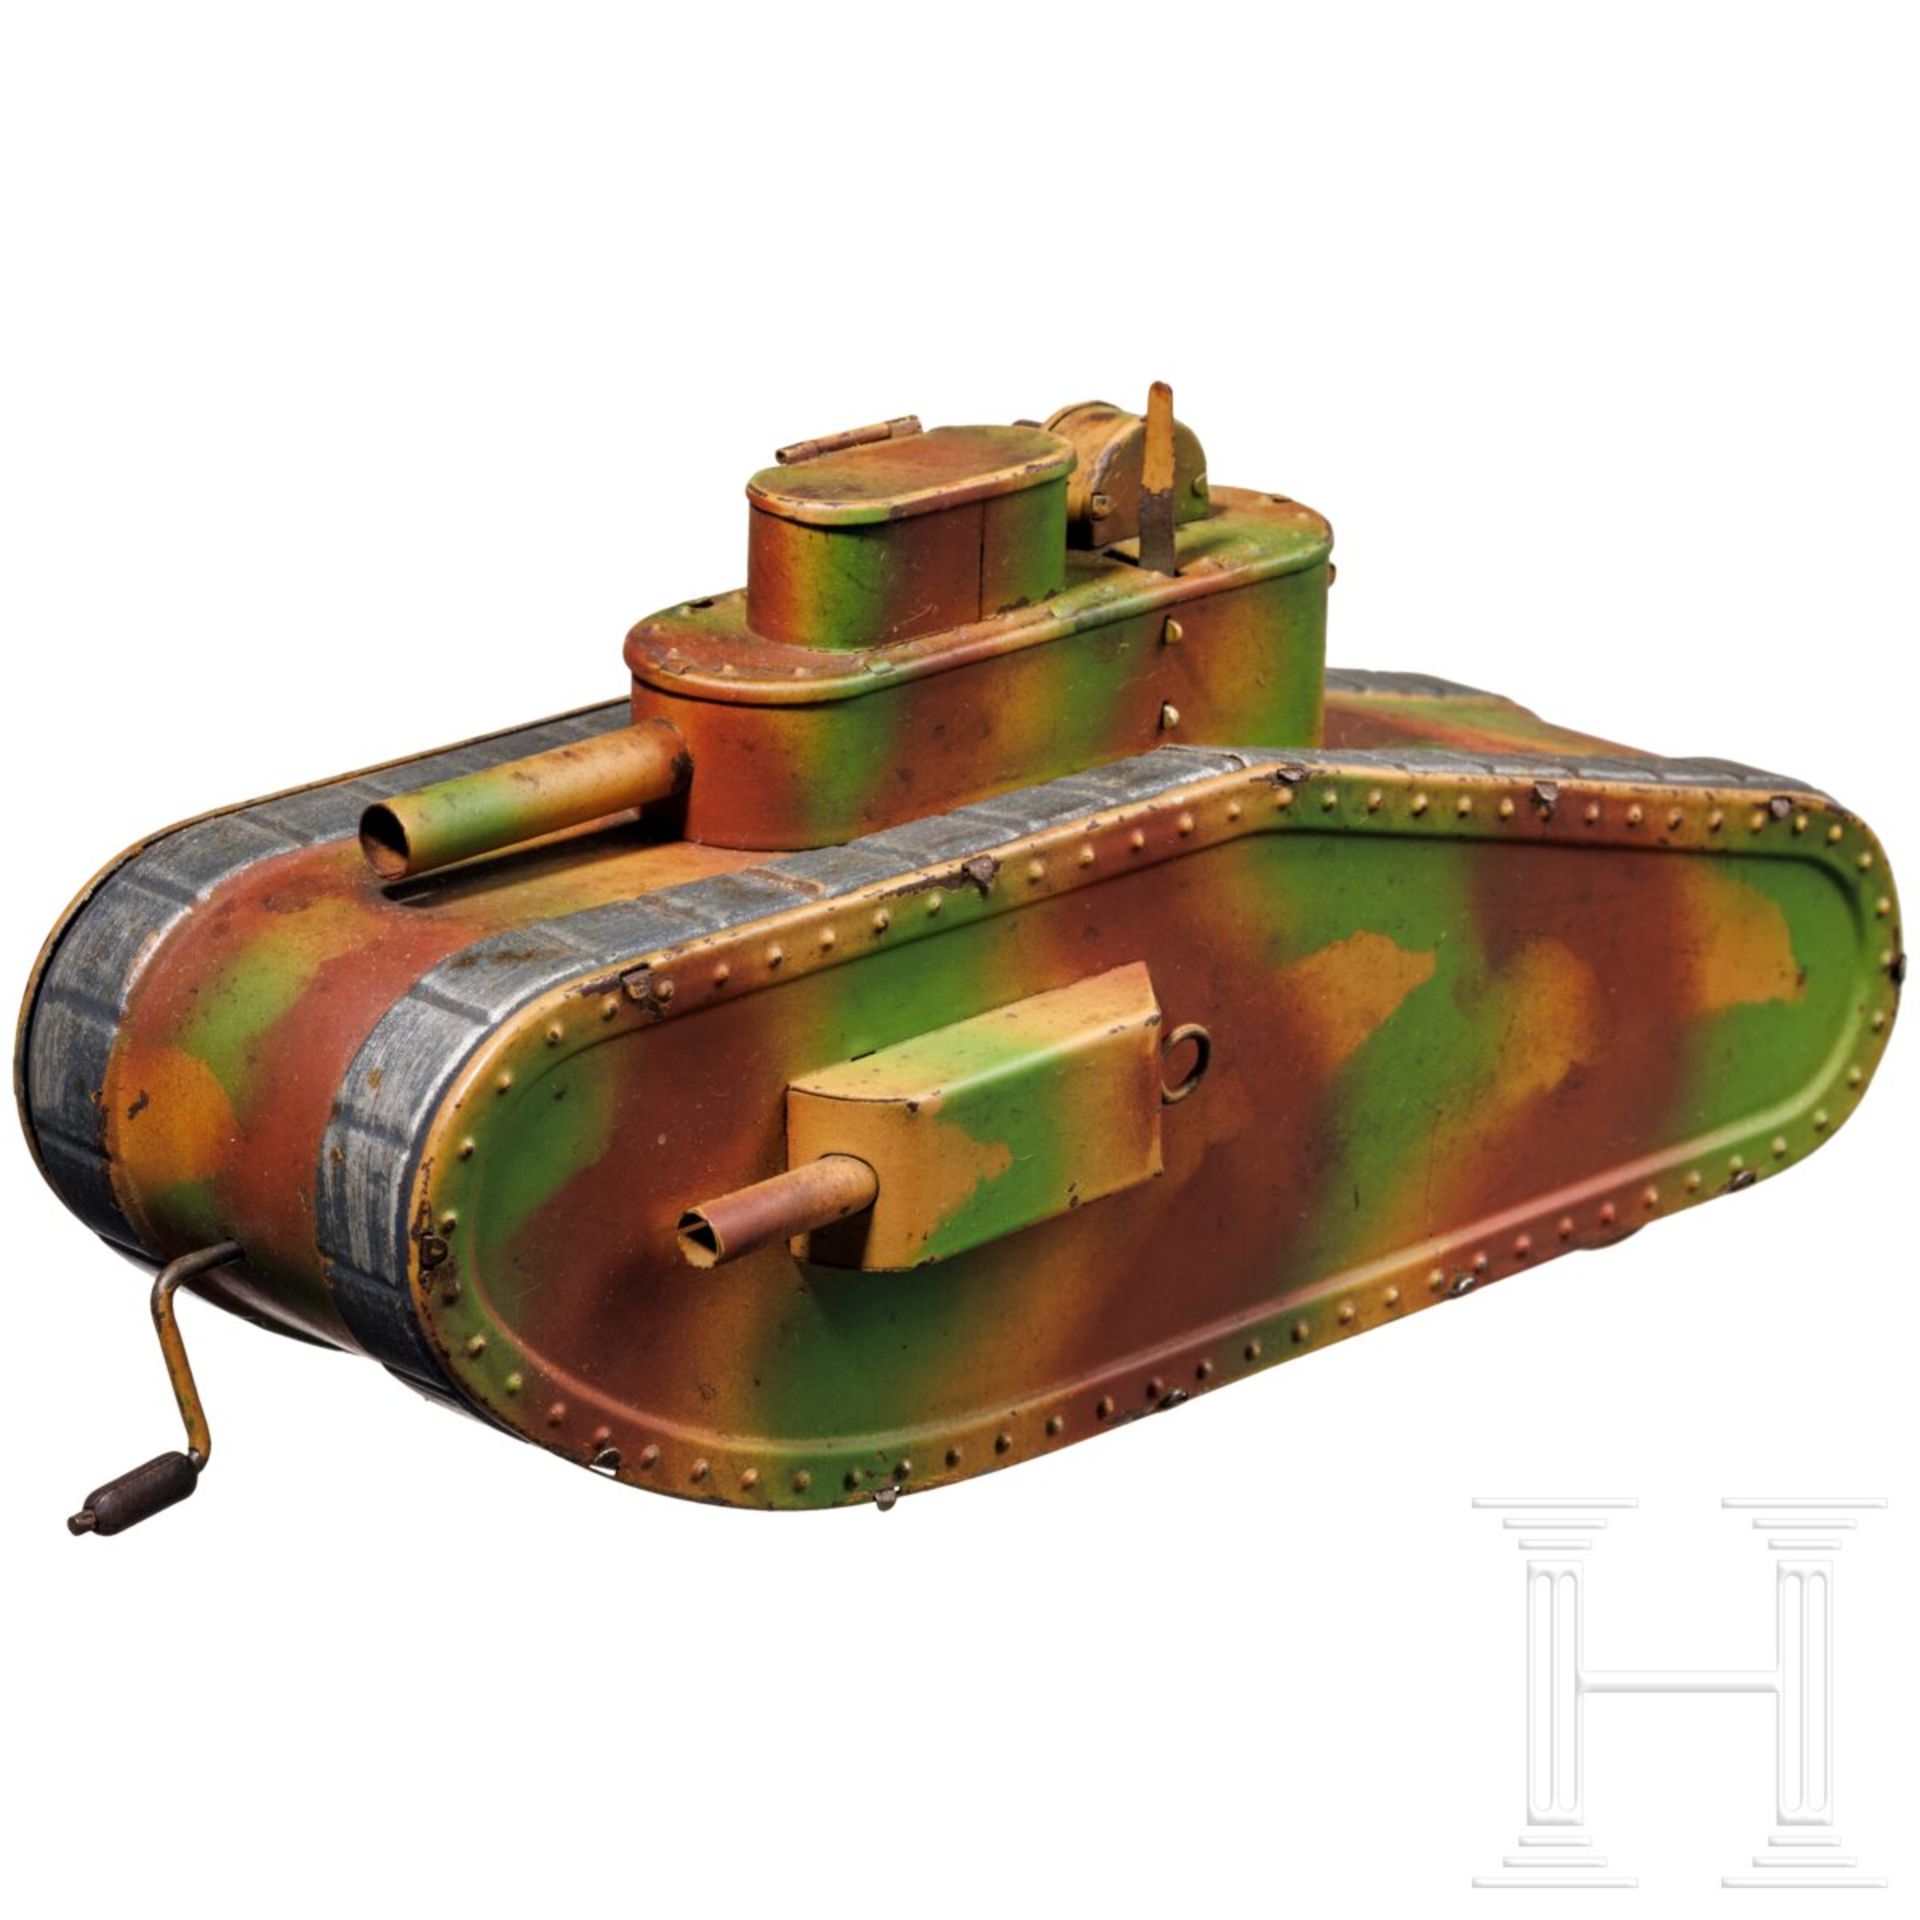 Hausser Tank 0/730, Ausführung ohne Raupenketten, mit Hess-Patentantrieb und Schießfunktion